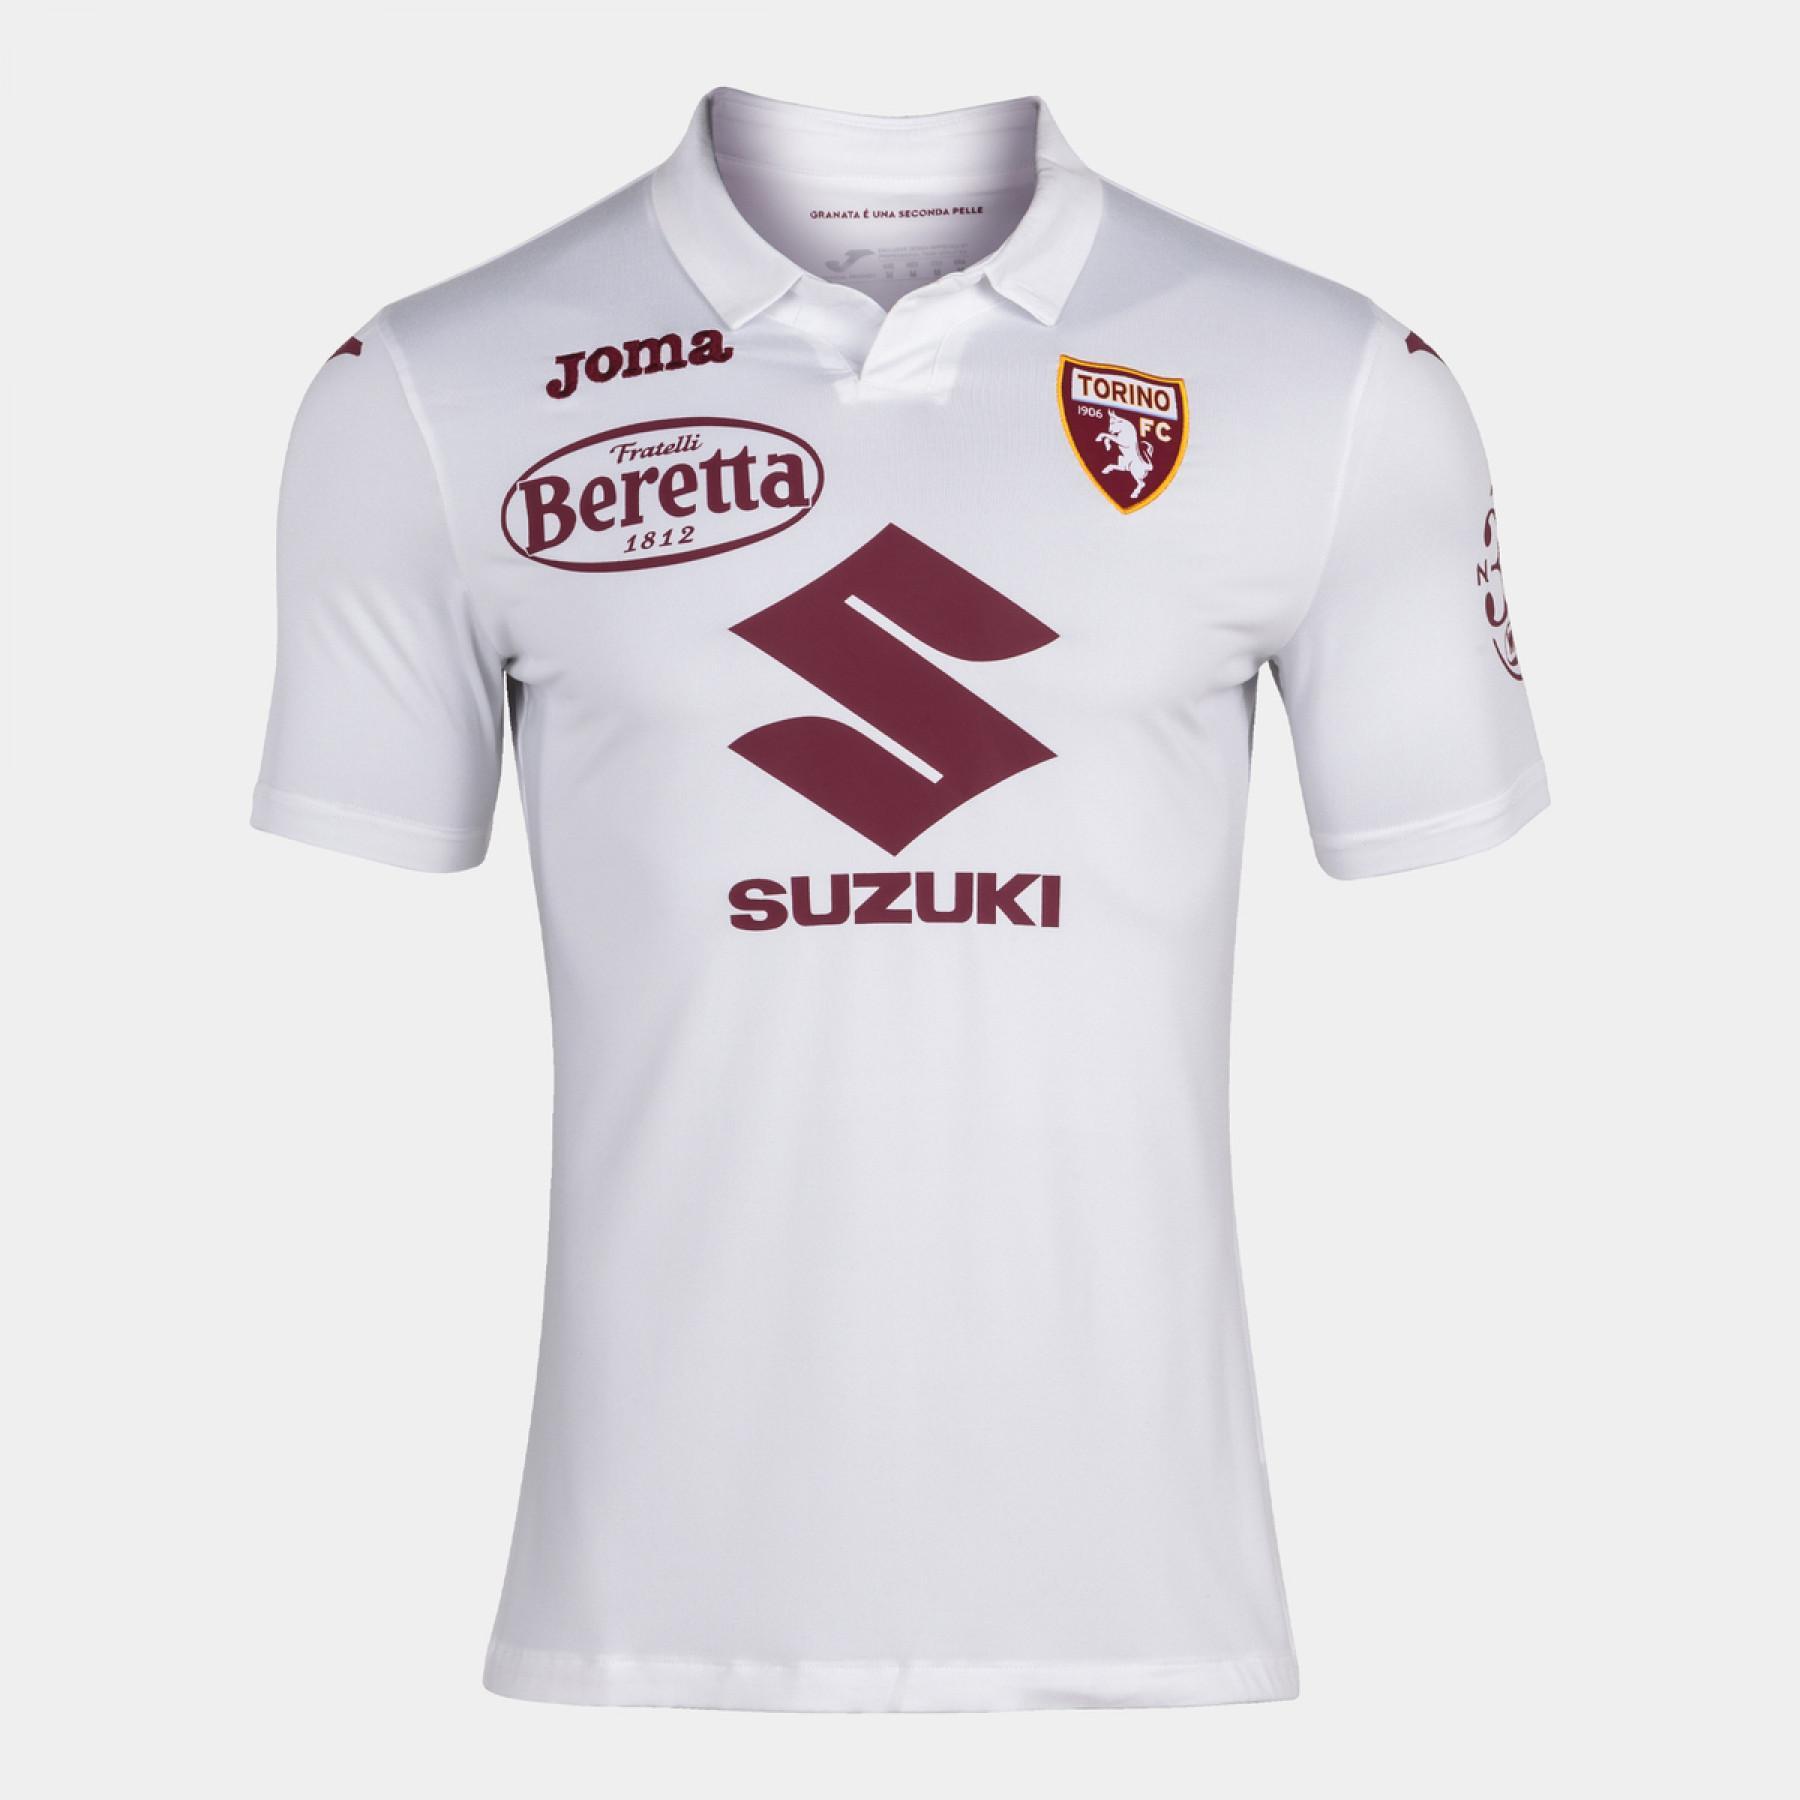 Maillot Extérieur authentique Torino FC 2020/21 avec sponsors